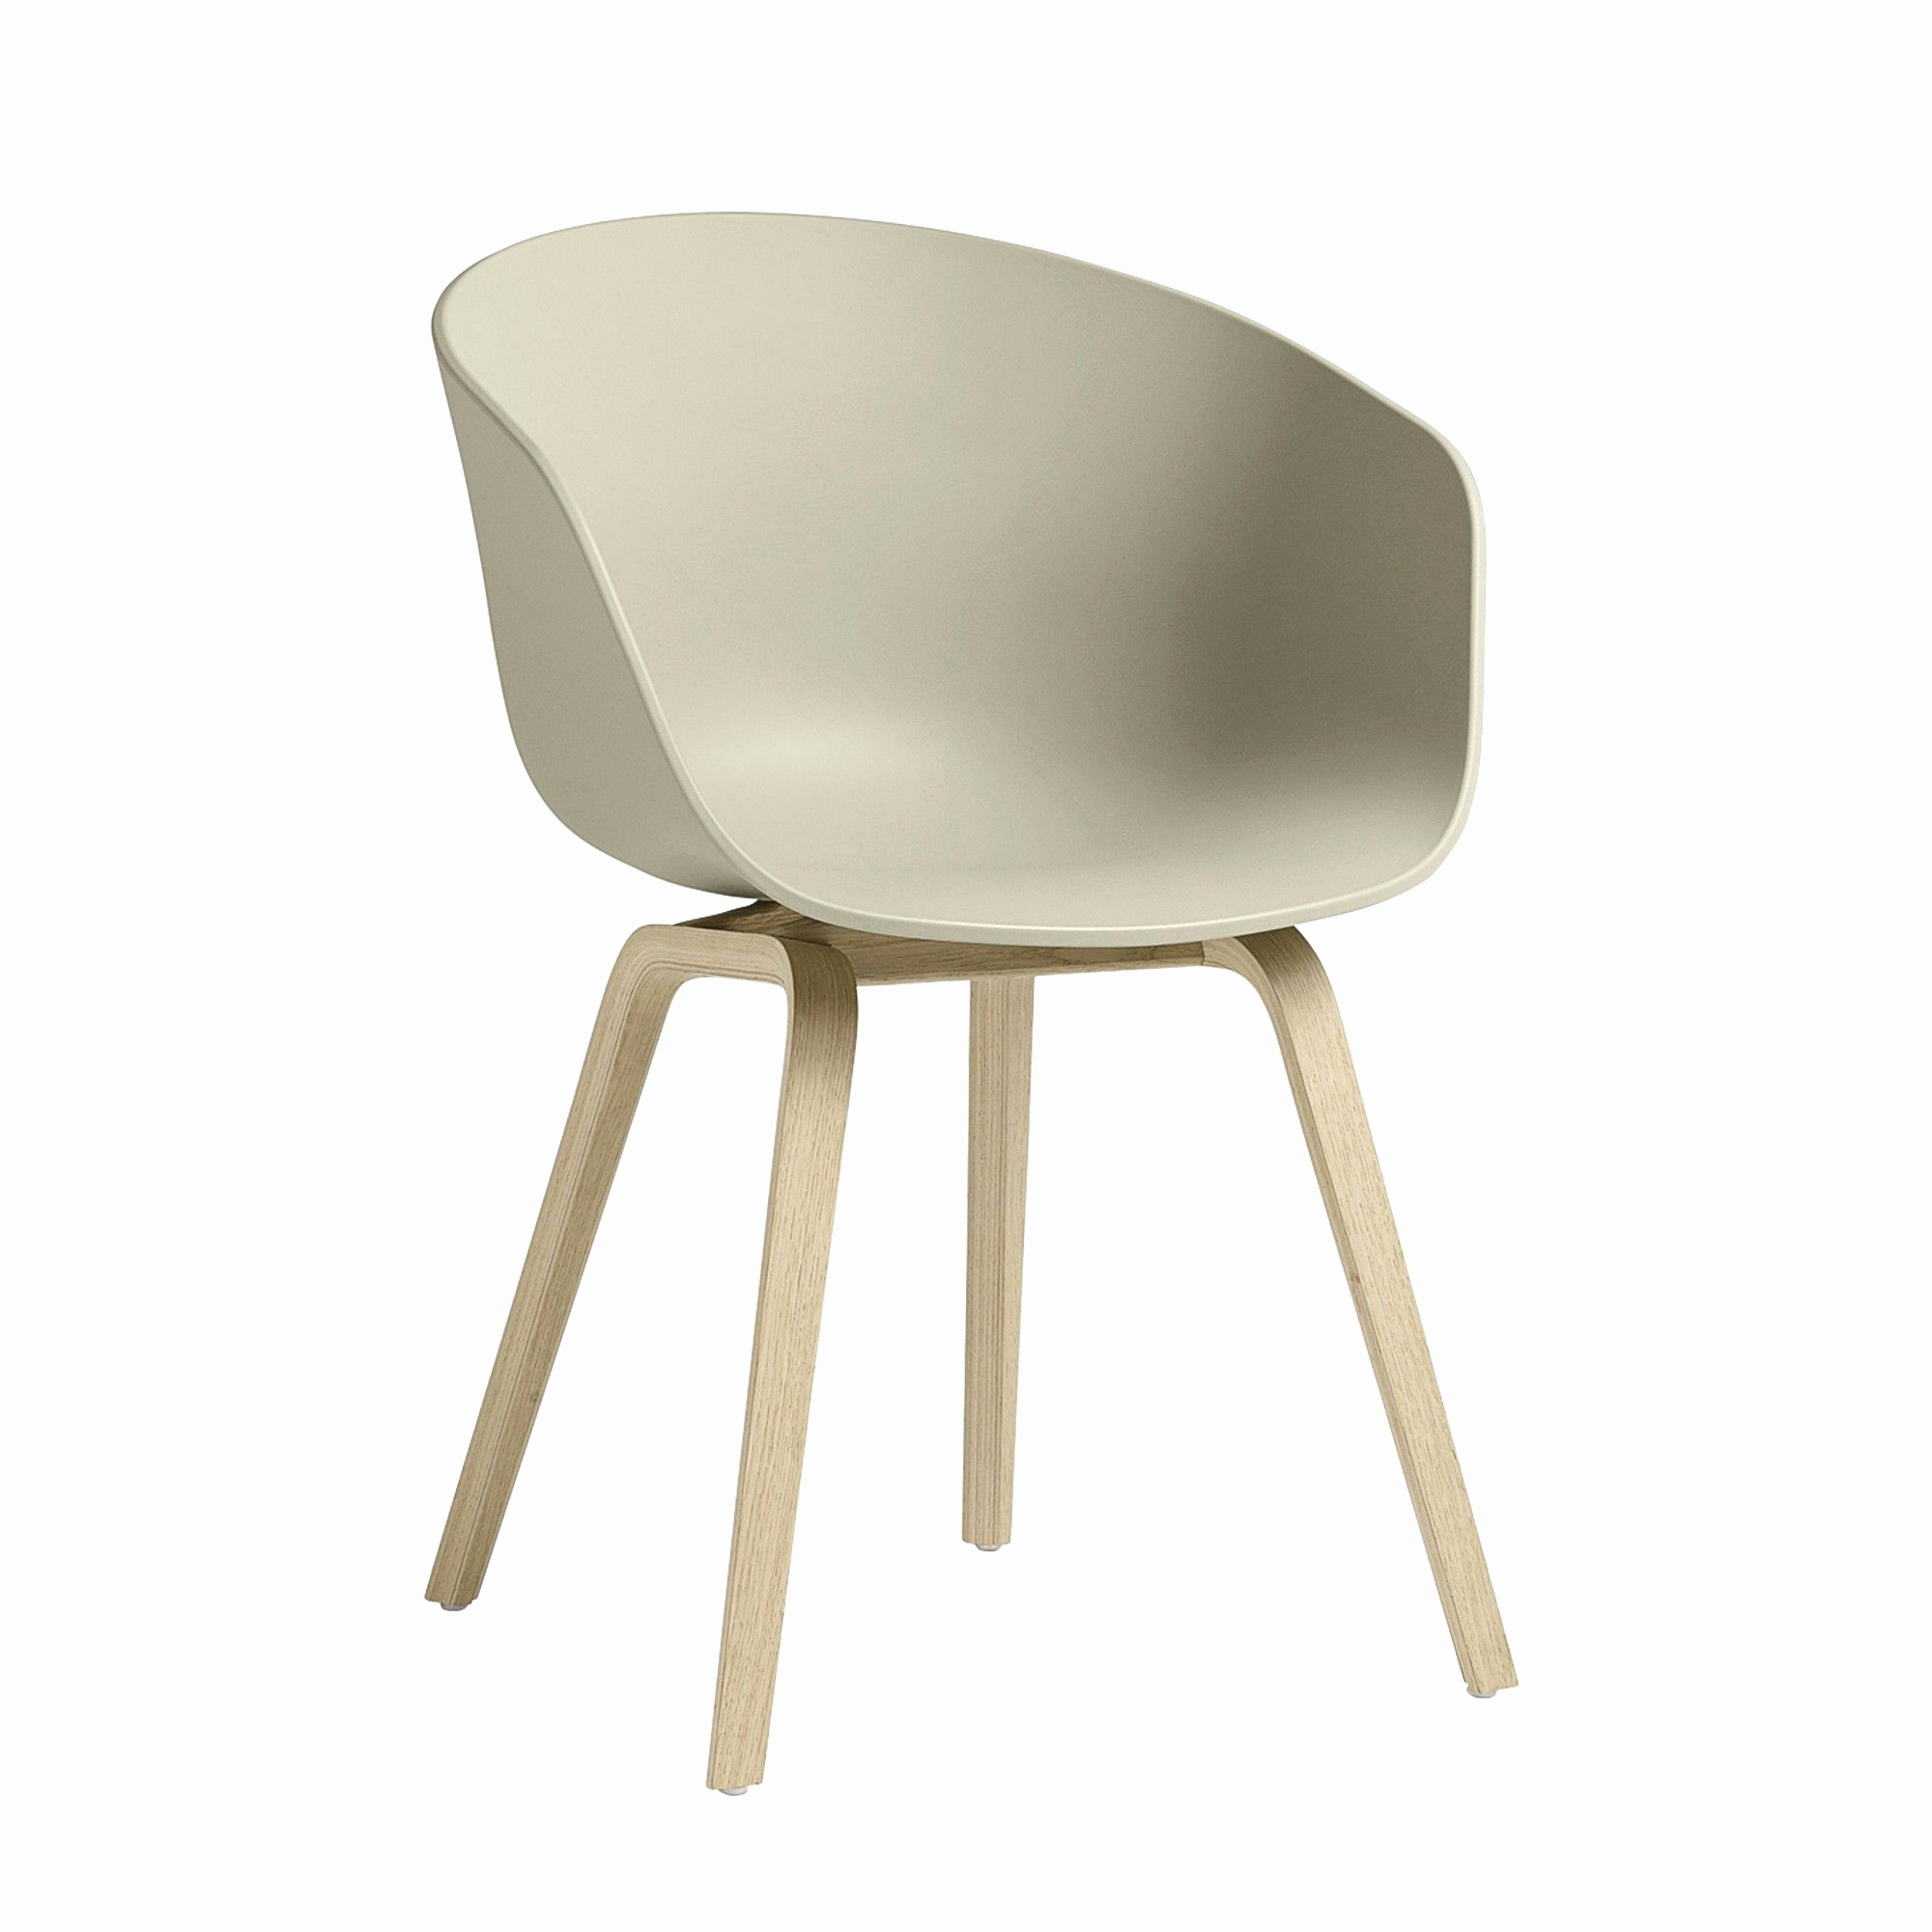 chaise avec accoudoir en bois photo de chaise avec accoudoir fauteuil accoudoir bois chaise bois avec of chaise avec accoudoir en bois